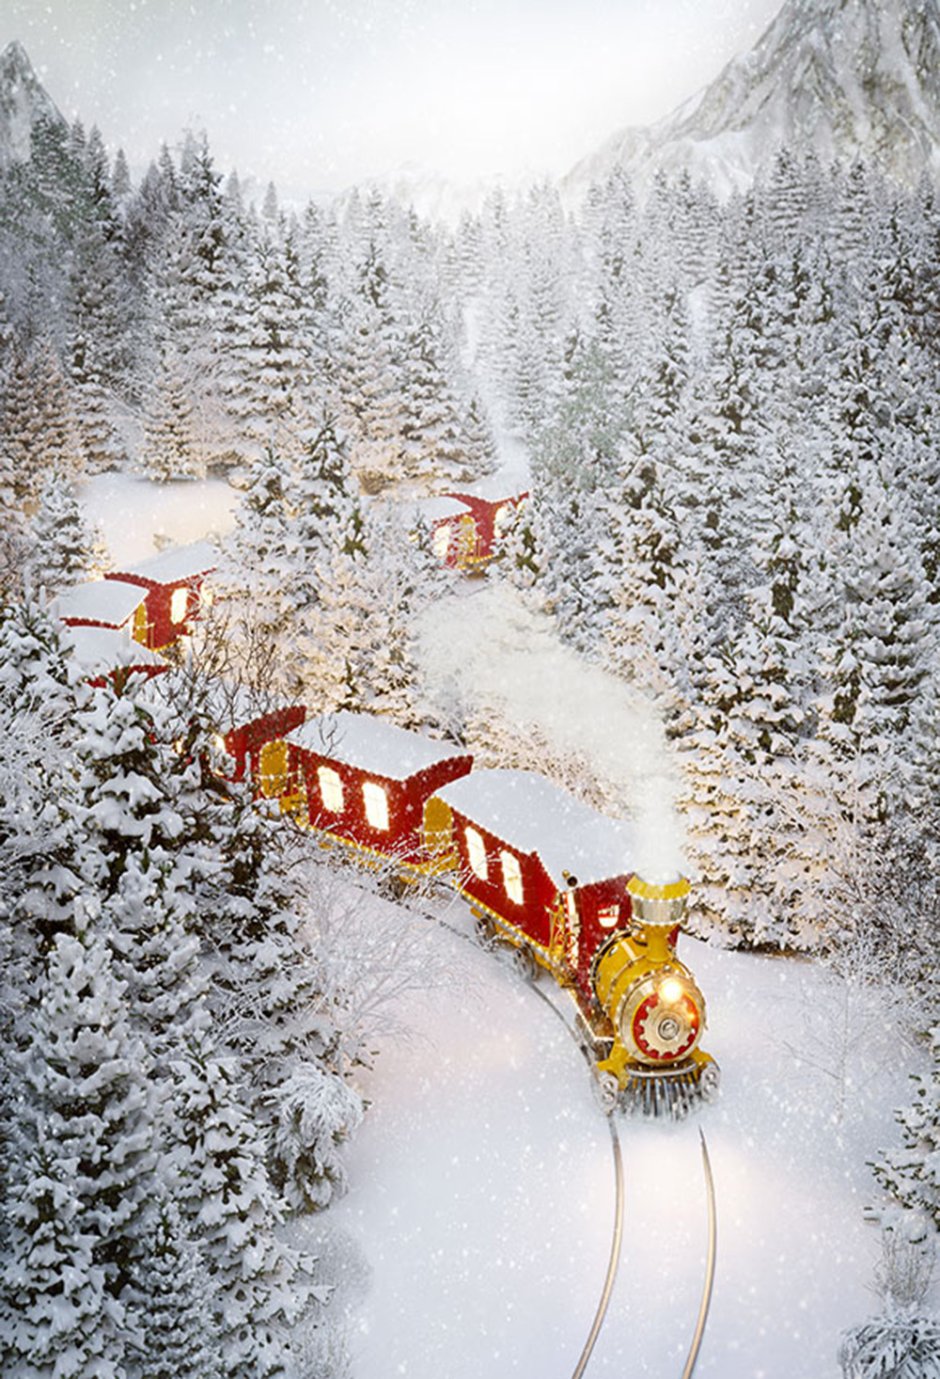 Поезд Крисмас Траин Рождественский